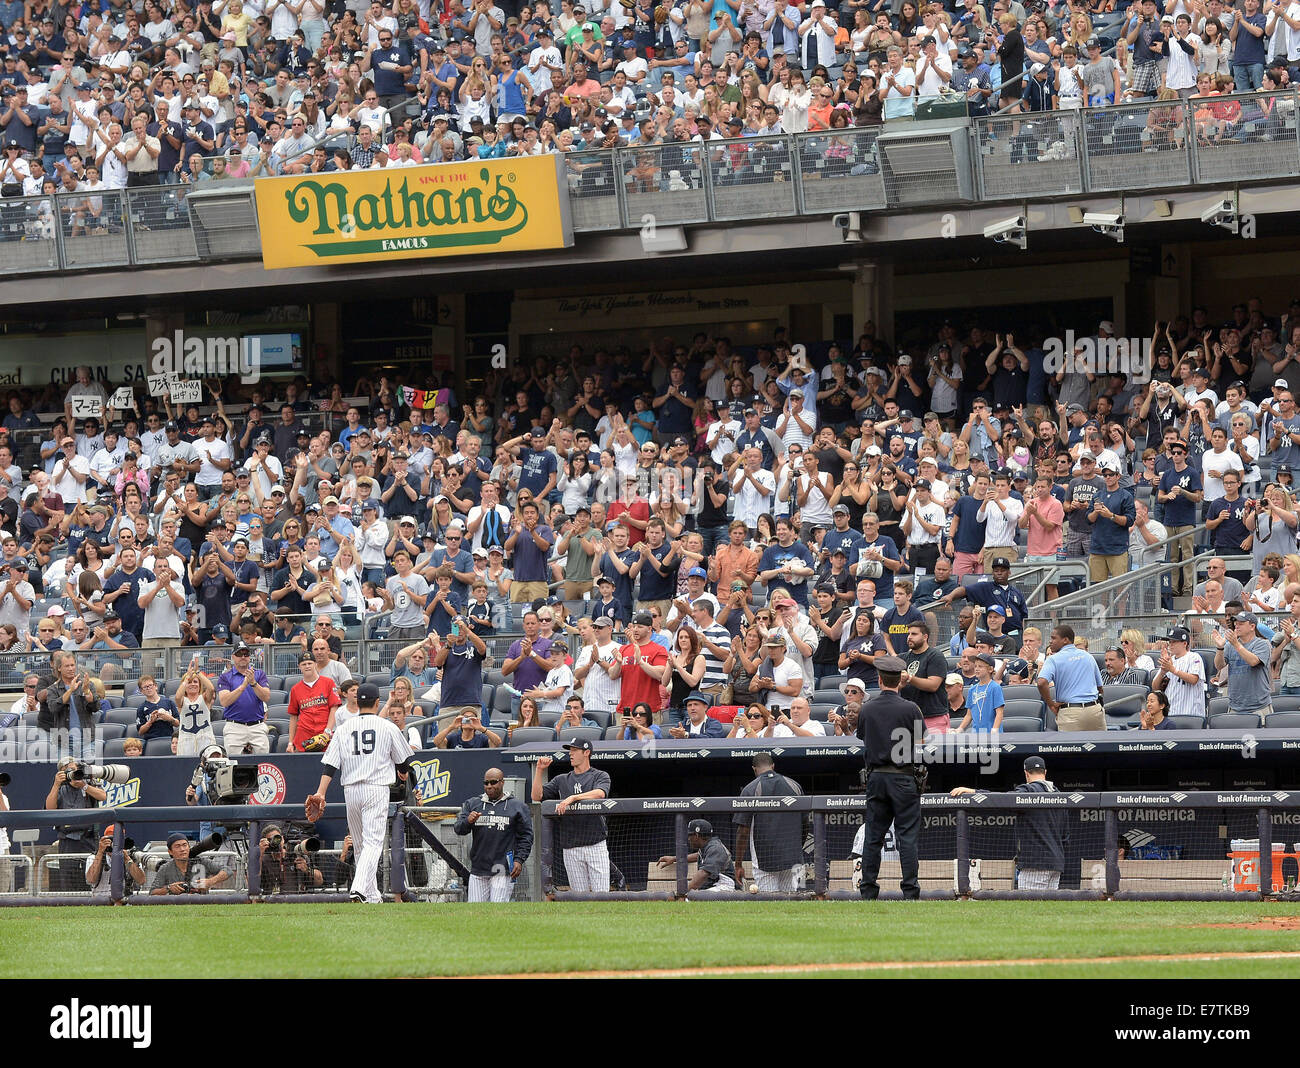 Masahiro Tanaka (Yankees), Settembre 21, 2014 - MLB : fan applaudire Masahiro Tanaka dei New York Yankees come egli cammina indietro in panchina dopo essere stato tirato nella sesta inning durante il Major League Baseball gioco contro il Toronto Blue Jays allo Yankee Stadium nel Bronx, New York, Stati Uniti. (Foto di AFLO) Foto Stock